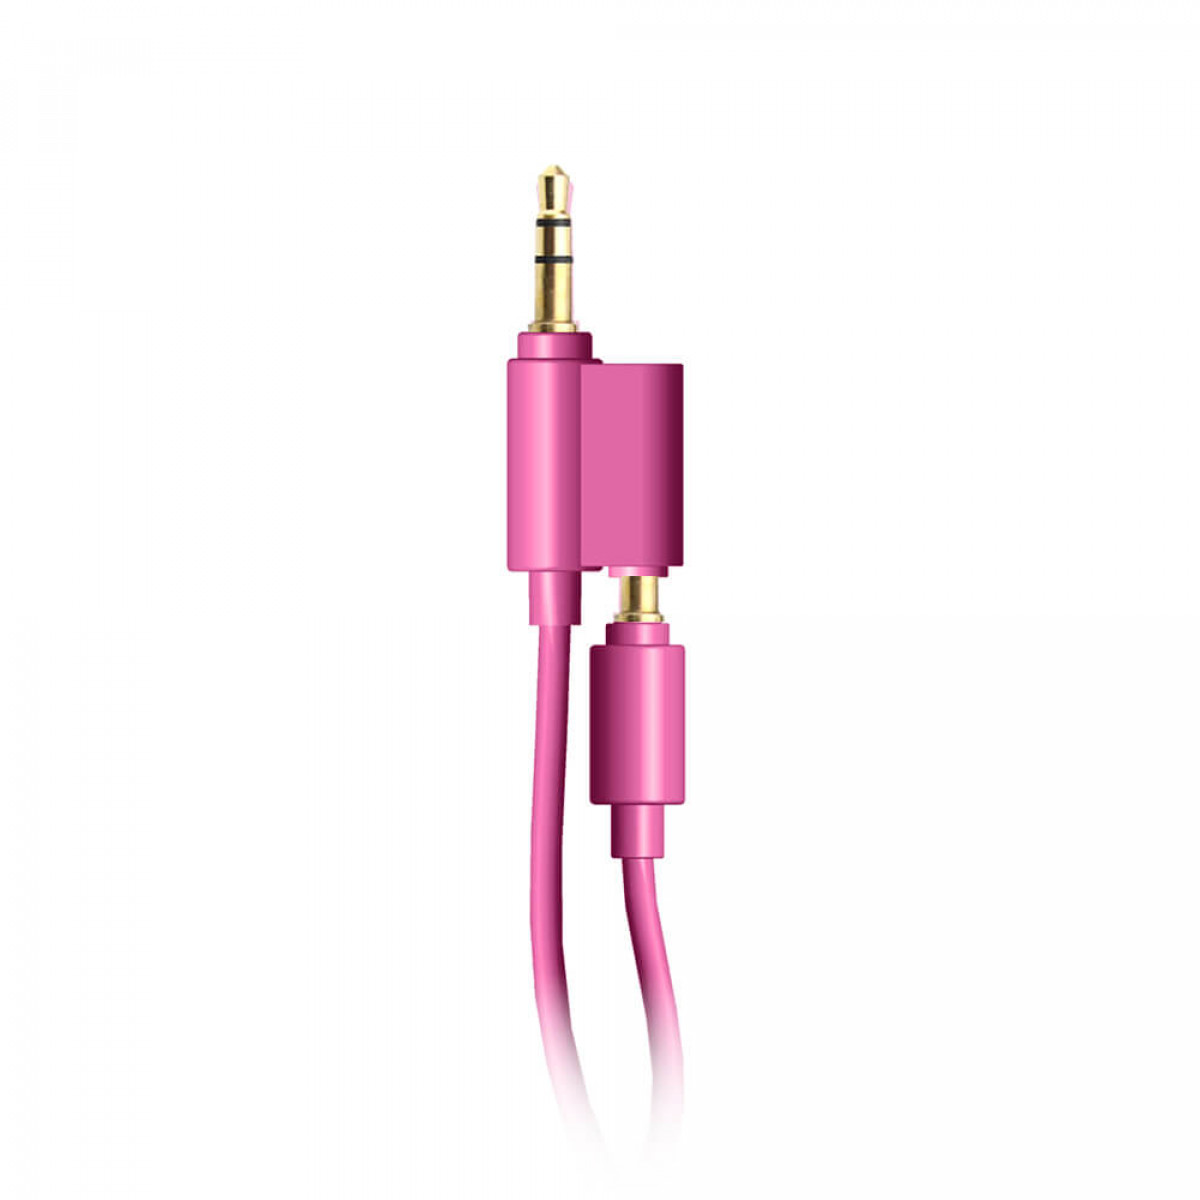 On-Ear On-ear PEPPA Junior Kopfhörer Wireless 85dB/95dB, Pink Kopfhörer PIG